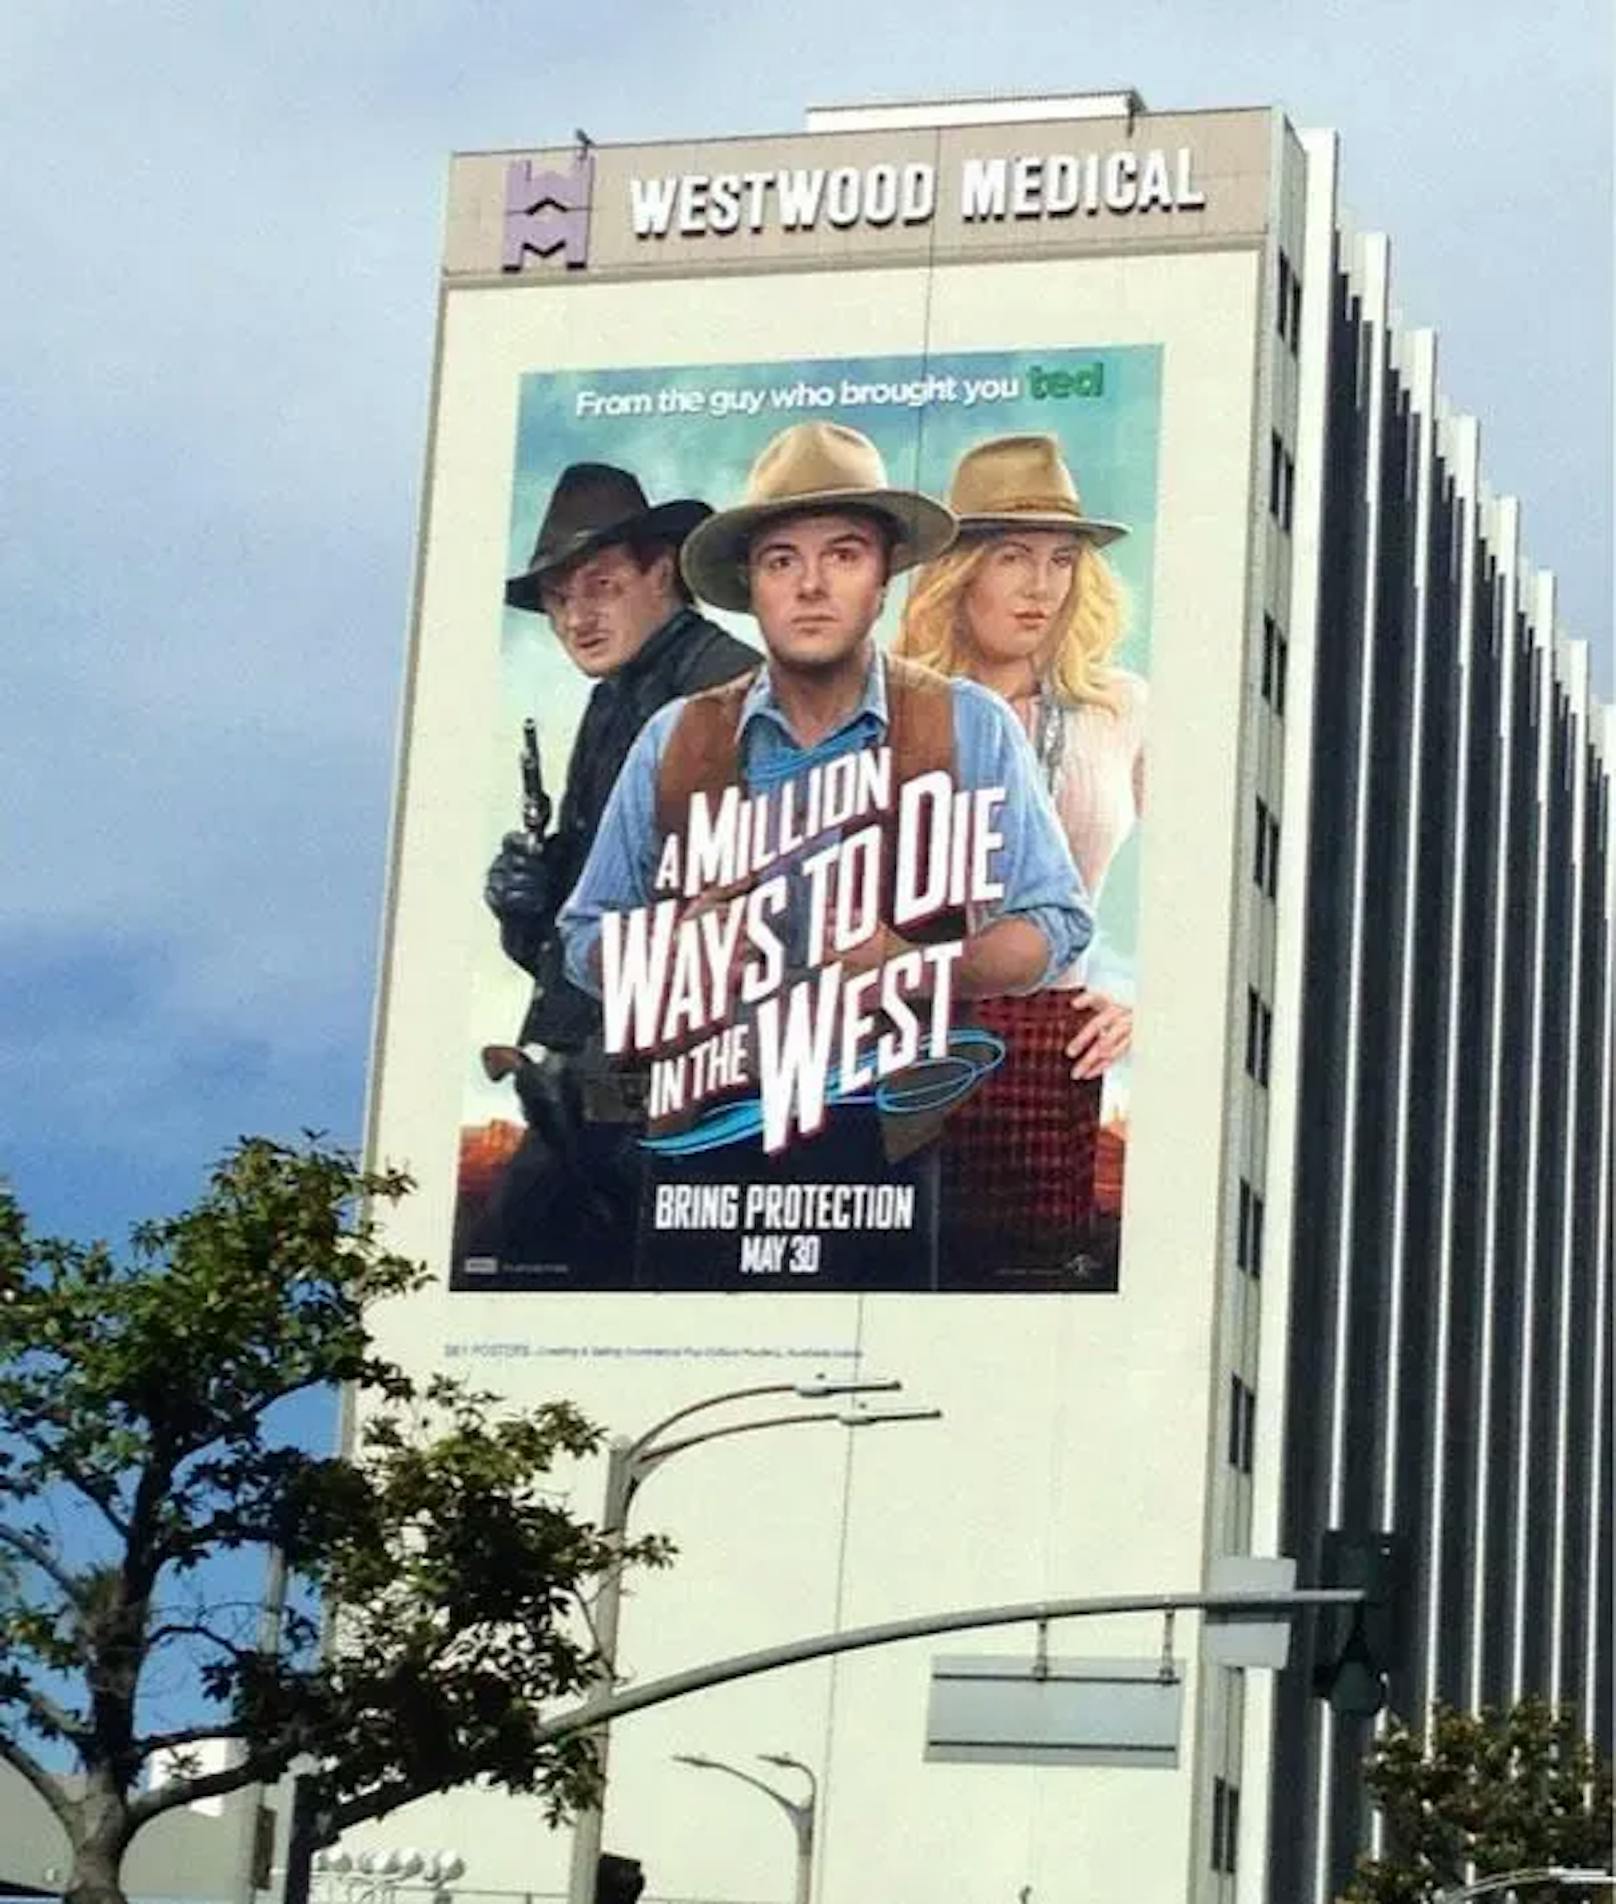 Die Werbetafel für den Film "A Milion Ways to Die in the West" ("eine Million Arten, im Westen zu sterben") befindet sich an der Wand des Spitals Westwood Medical.